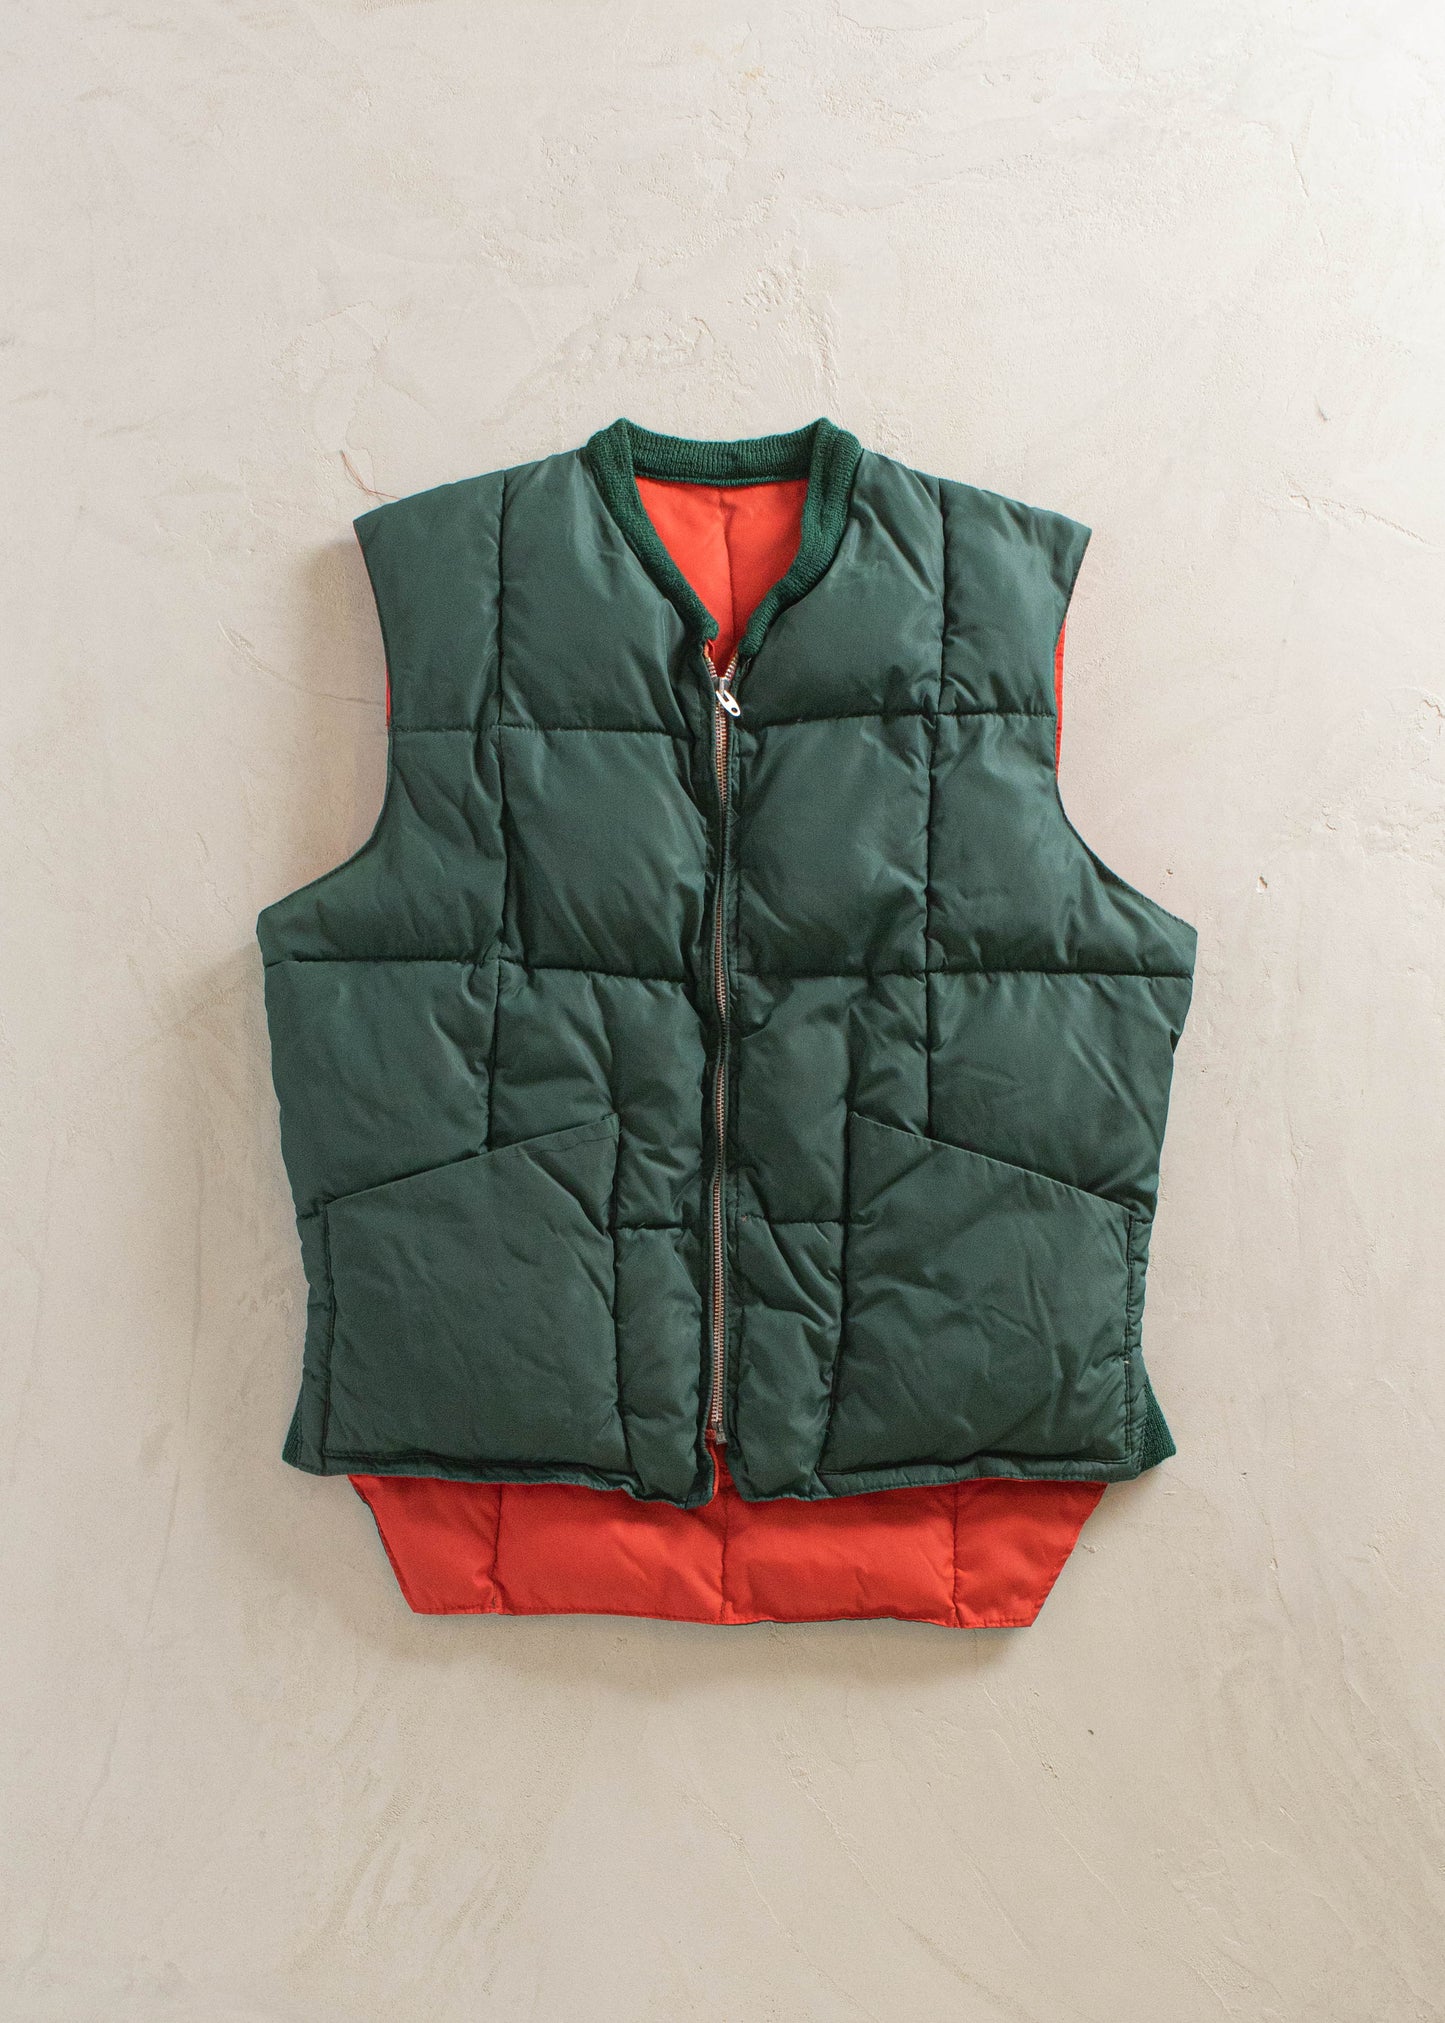 1980s Reversible Nylon Vest Size M/L